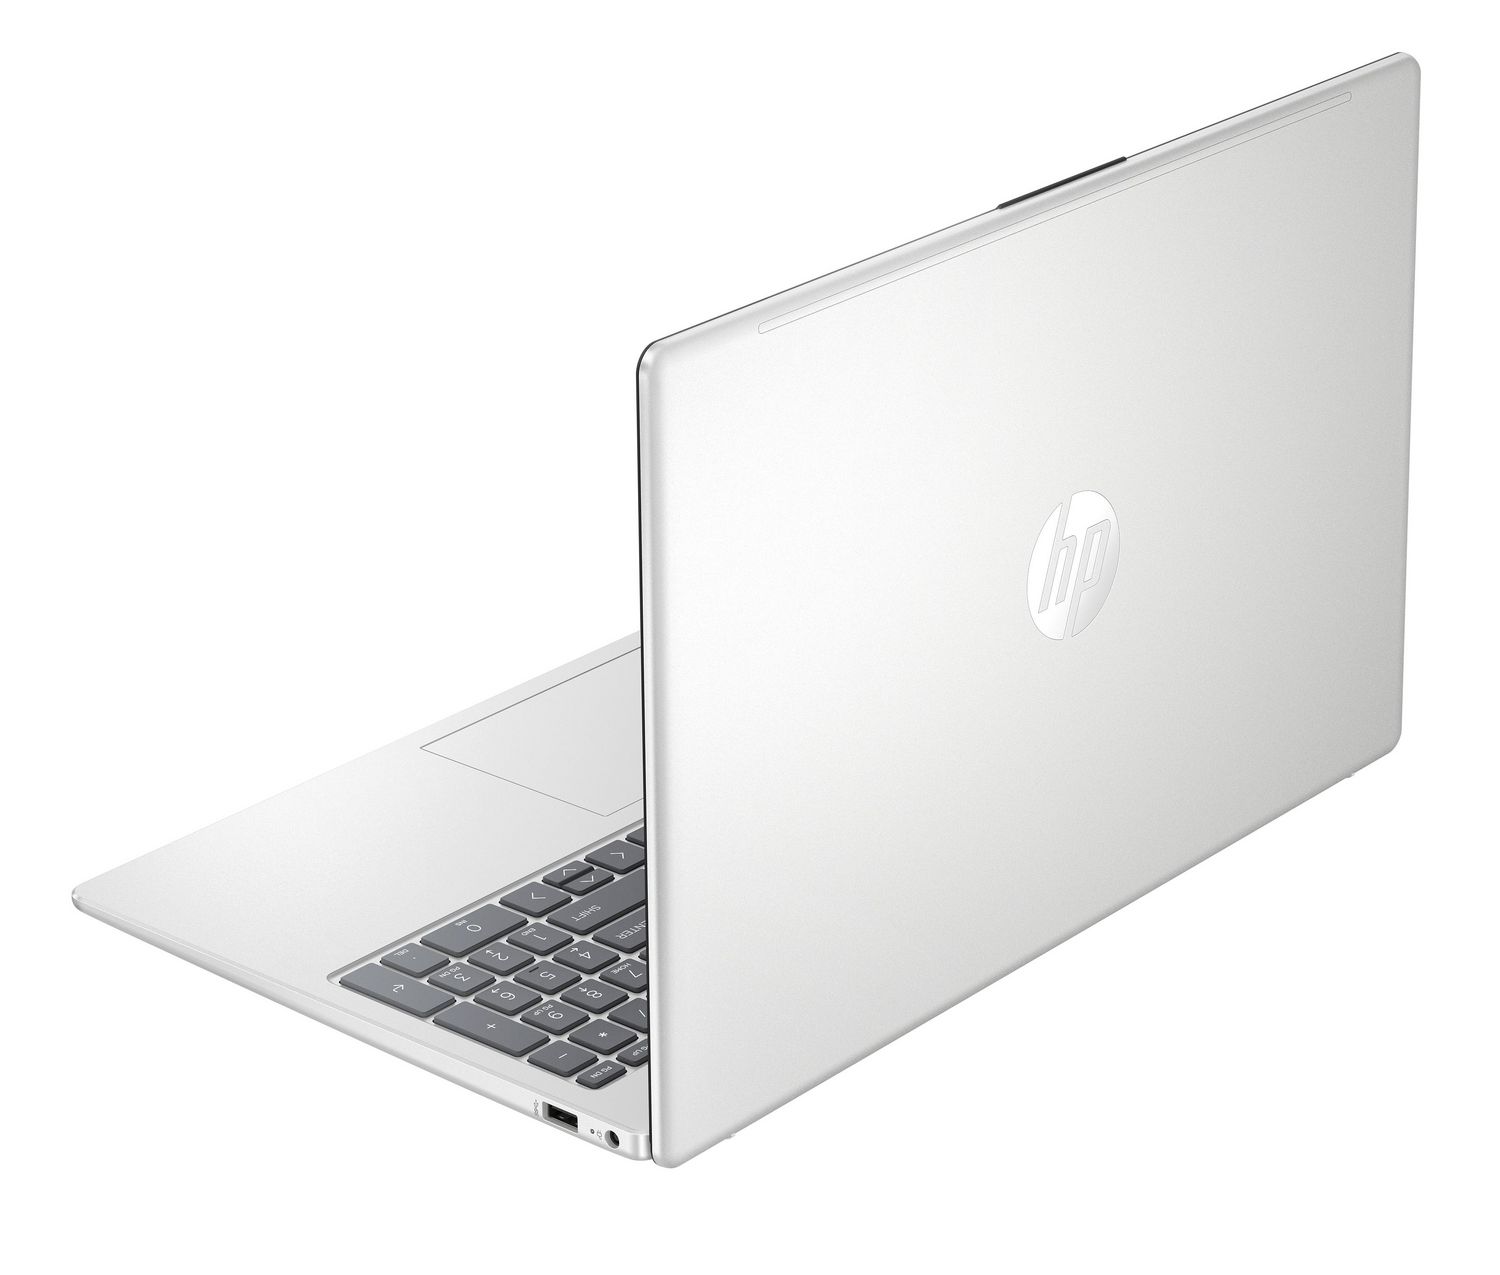 Ordinateur portable PC (laptop) HP 15.6 pouces - Bon Comptoir